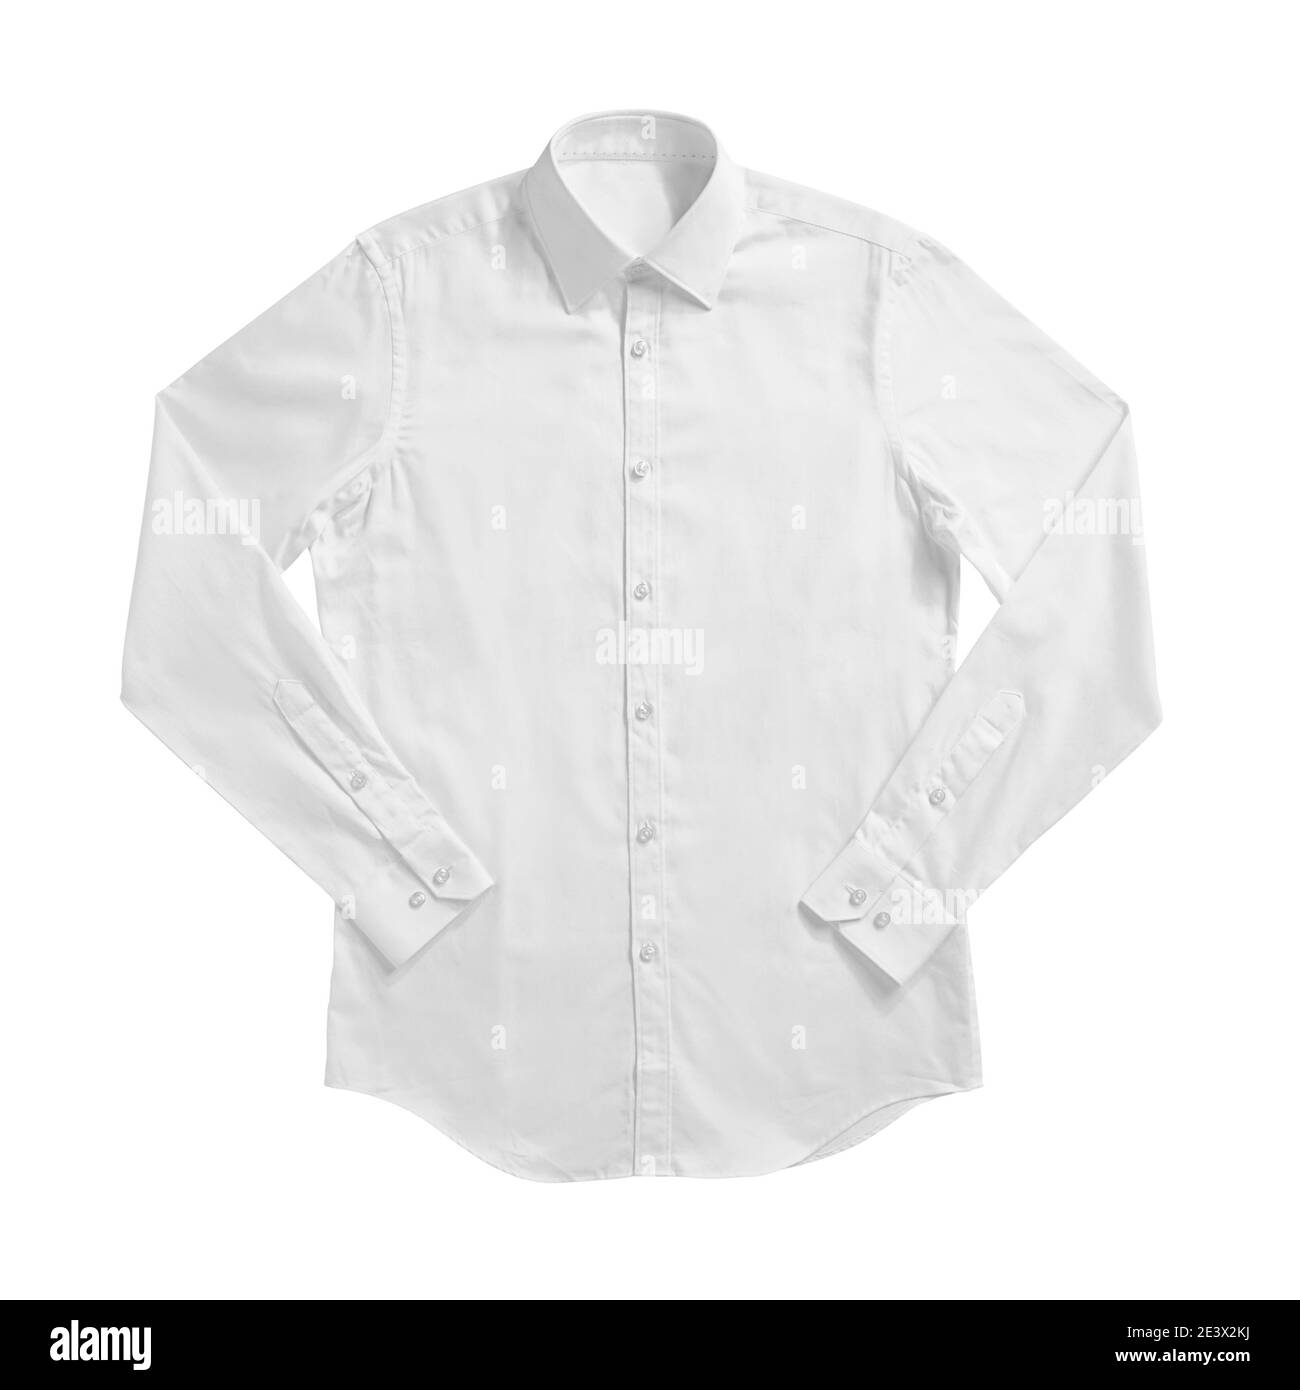 Download Camisa De Vestir De Cuello Blanco Imagenes De Stock En Blanco Y Negro Alamy